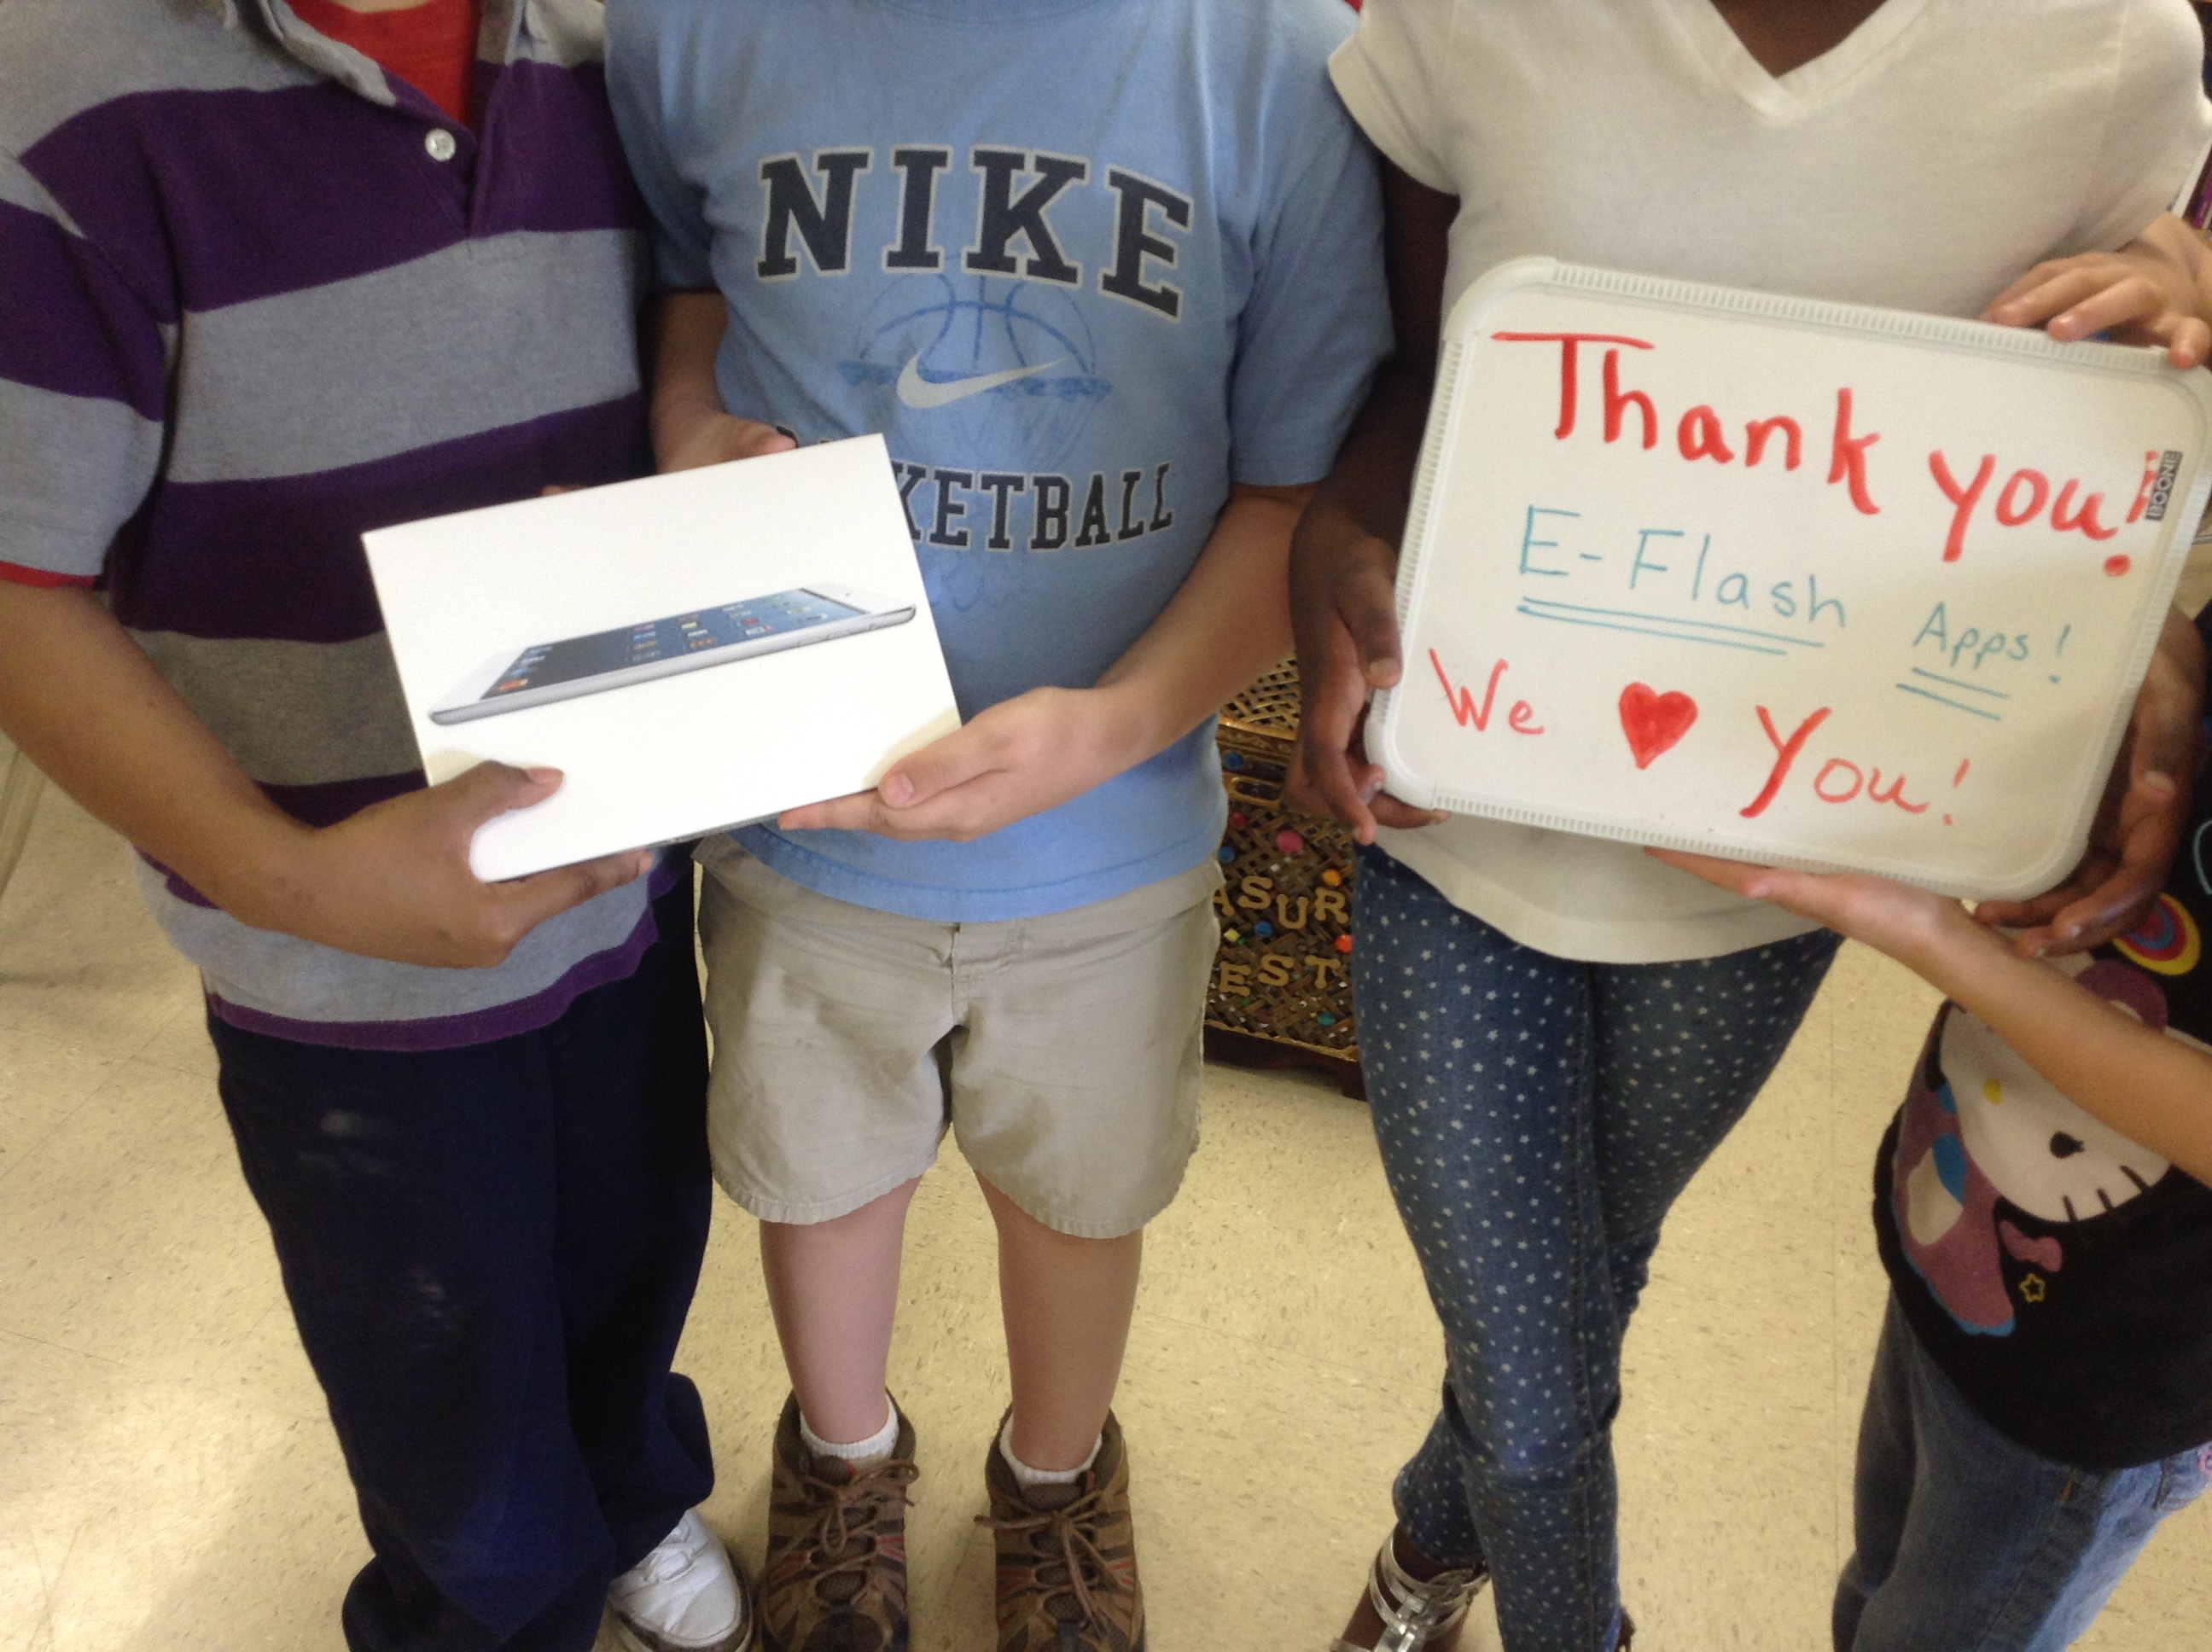 EFlashApps iPad Mini Giveaway Winners